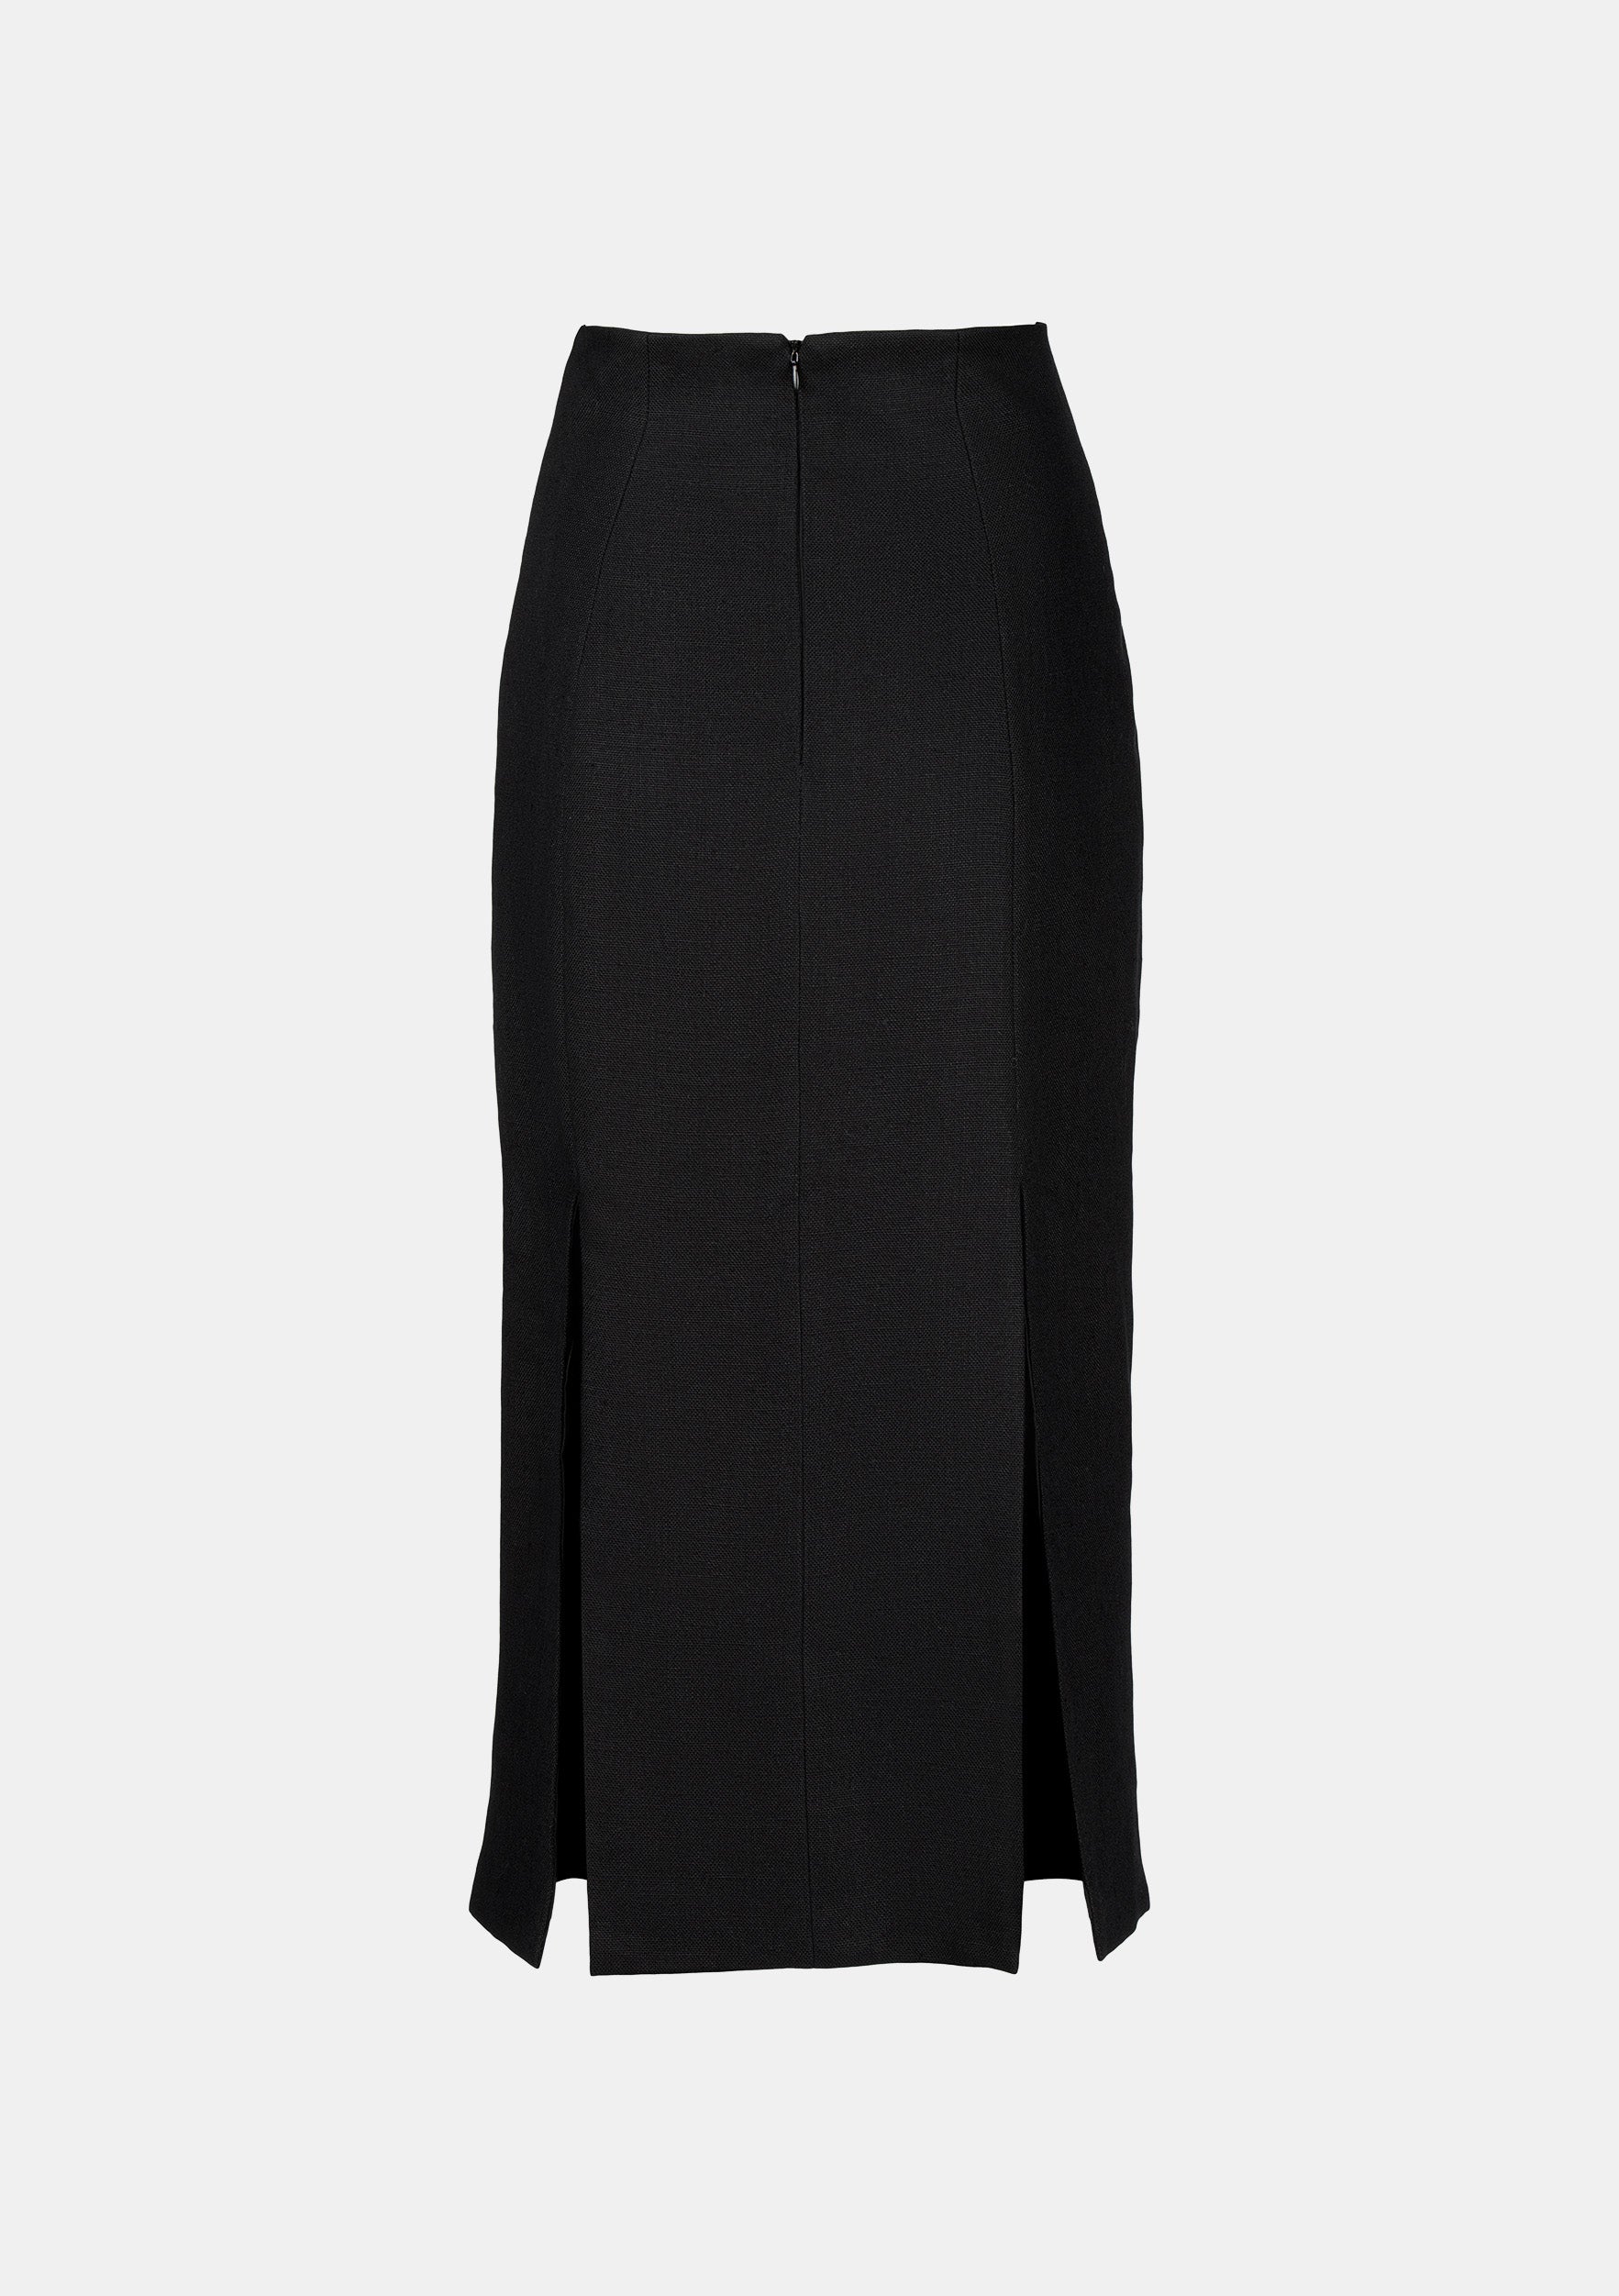 Cara Skirt in Linen Black